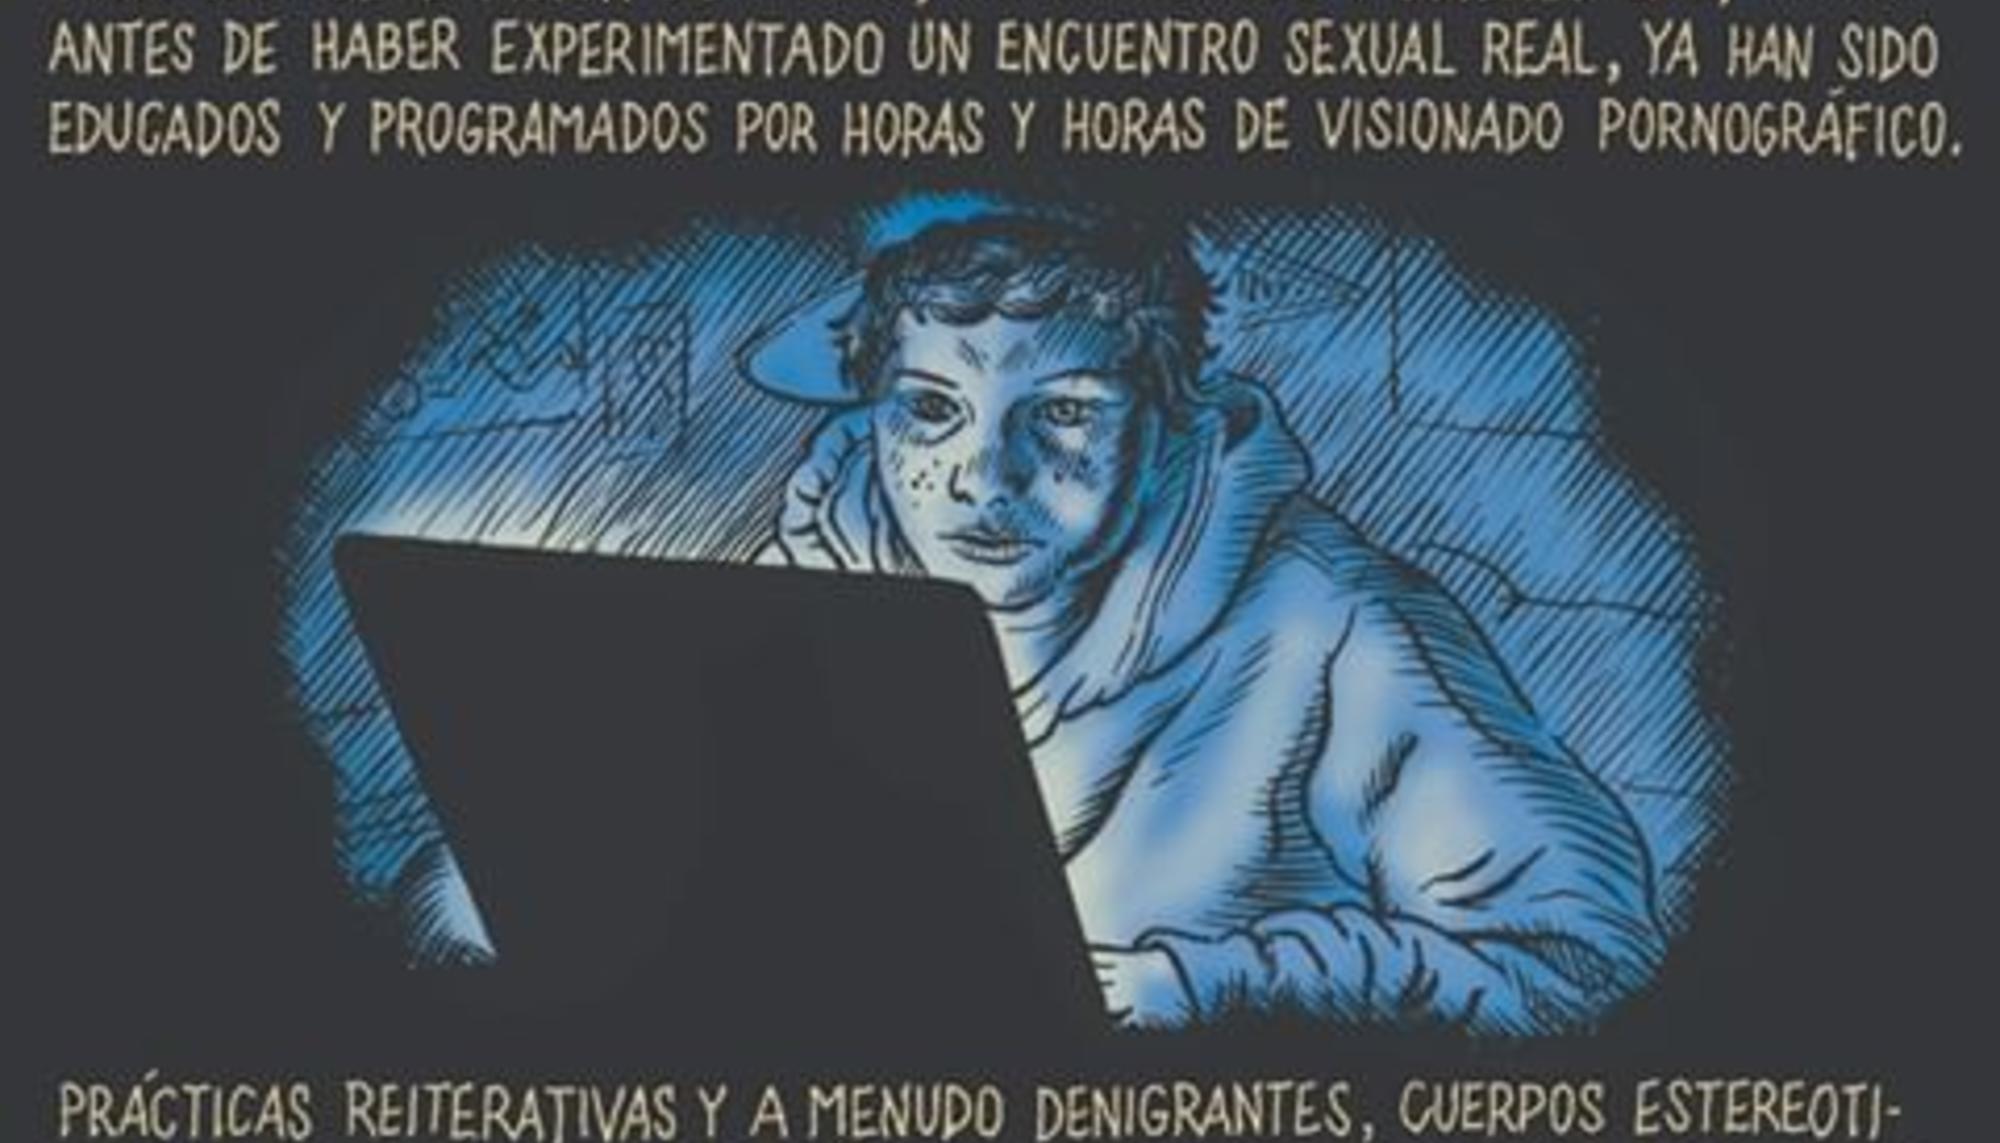 Porno y adolescentes, Miguel Brieva